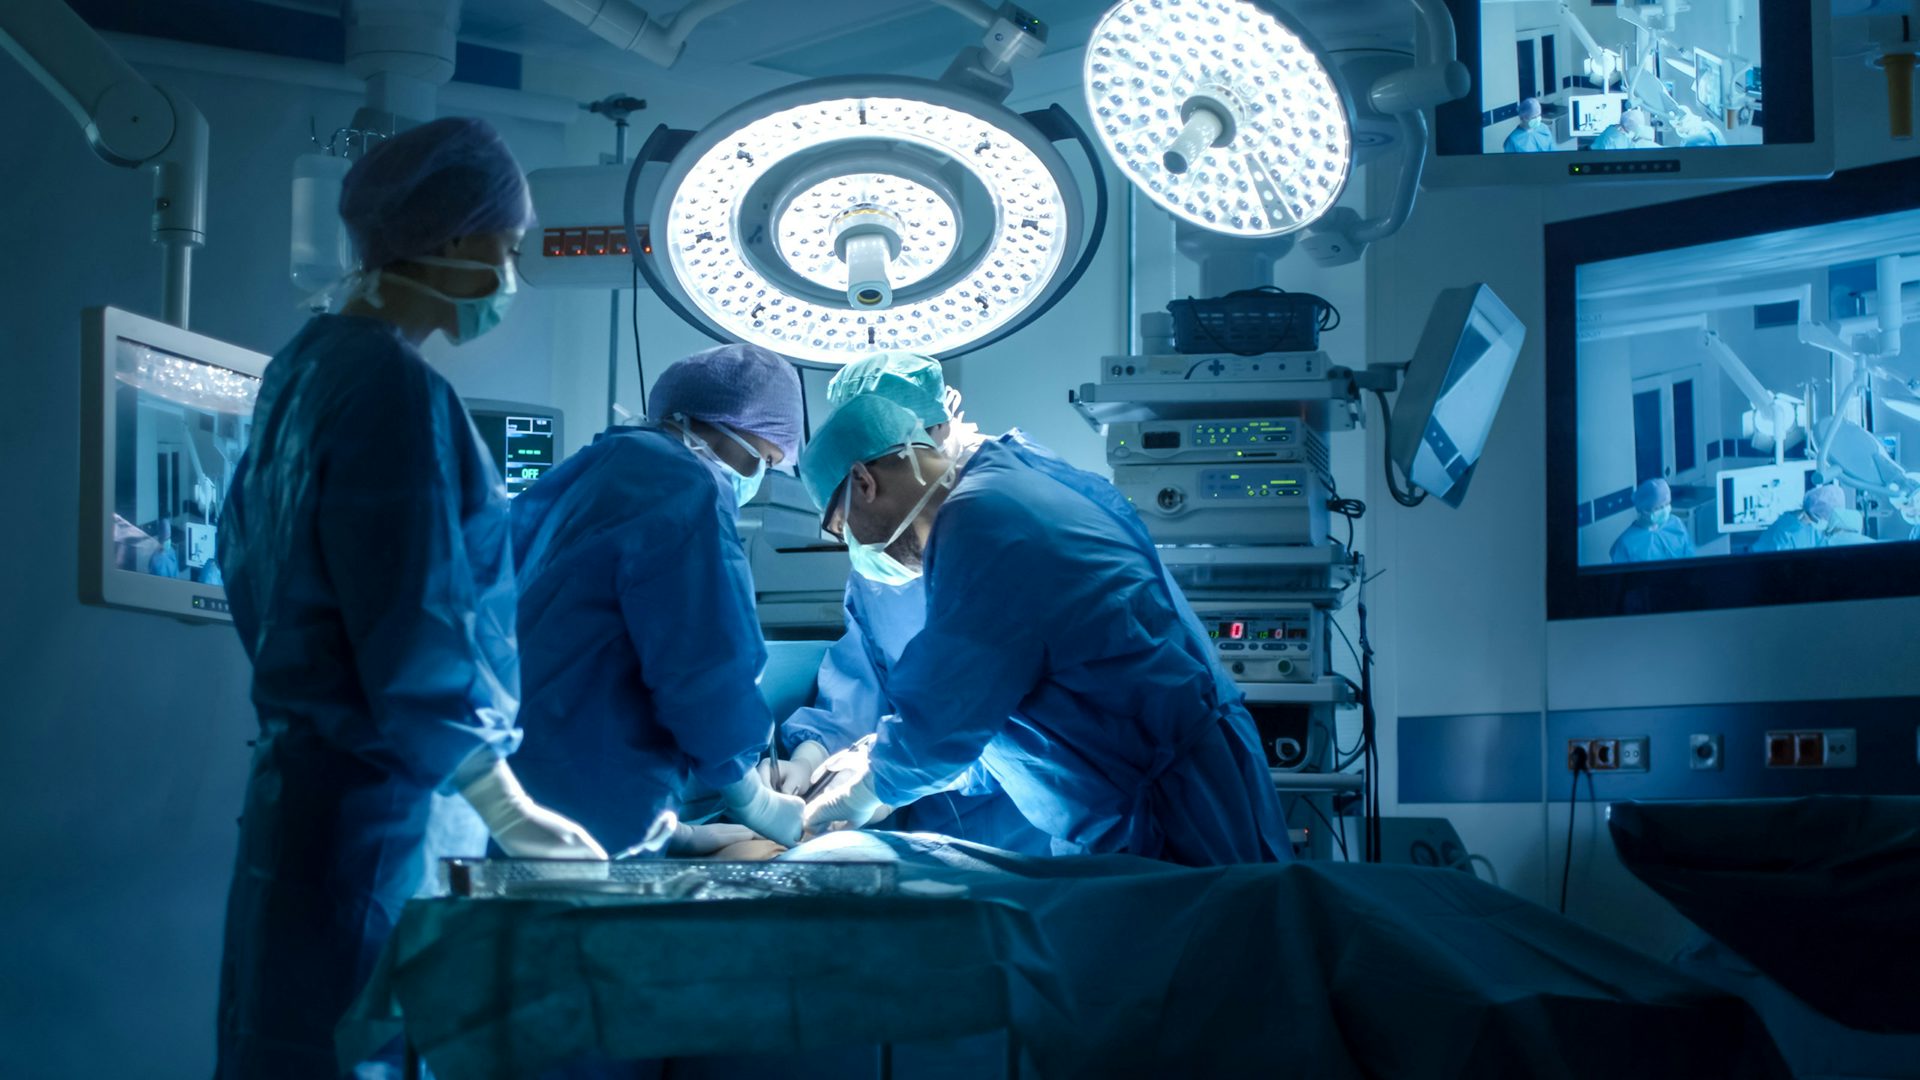 Chirurdzy wykonujący operację na sali operacyjnej: Zespół wykwalifikowanych chirurgów przeprowadzających zabieg medyczny w sterylnej sali operacyjnej.